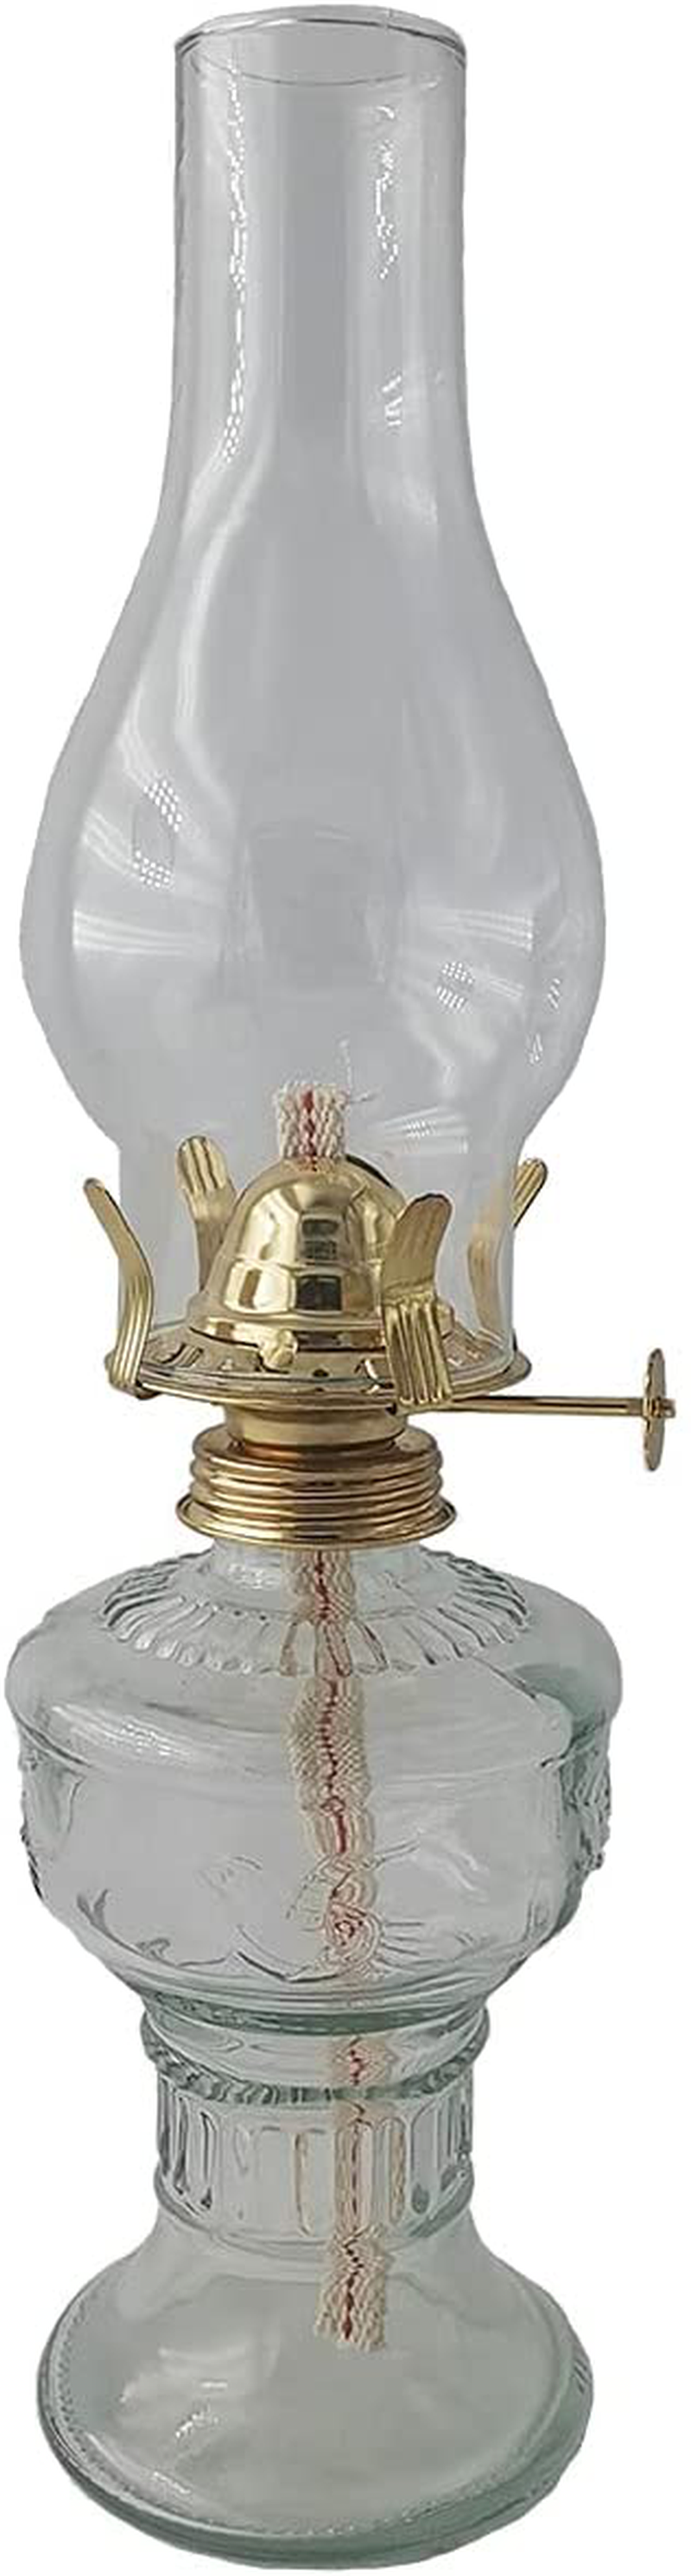 Oil-Lamp Vintage Glass Kerosene-Lantern - 13''Chamber Oil Lamp (13 in) Home & Garden > Lighting Accessories > Oil Lamp Fuel Hente 13 in  